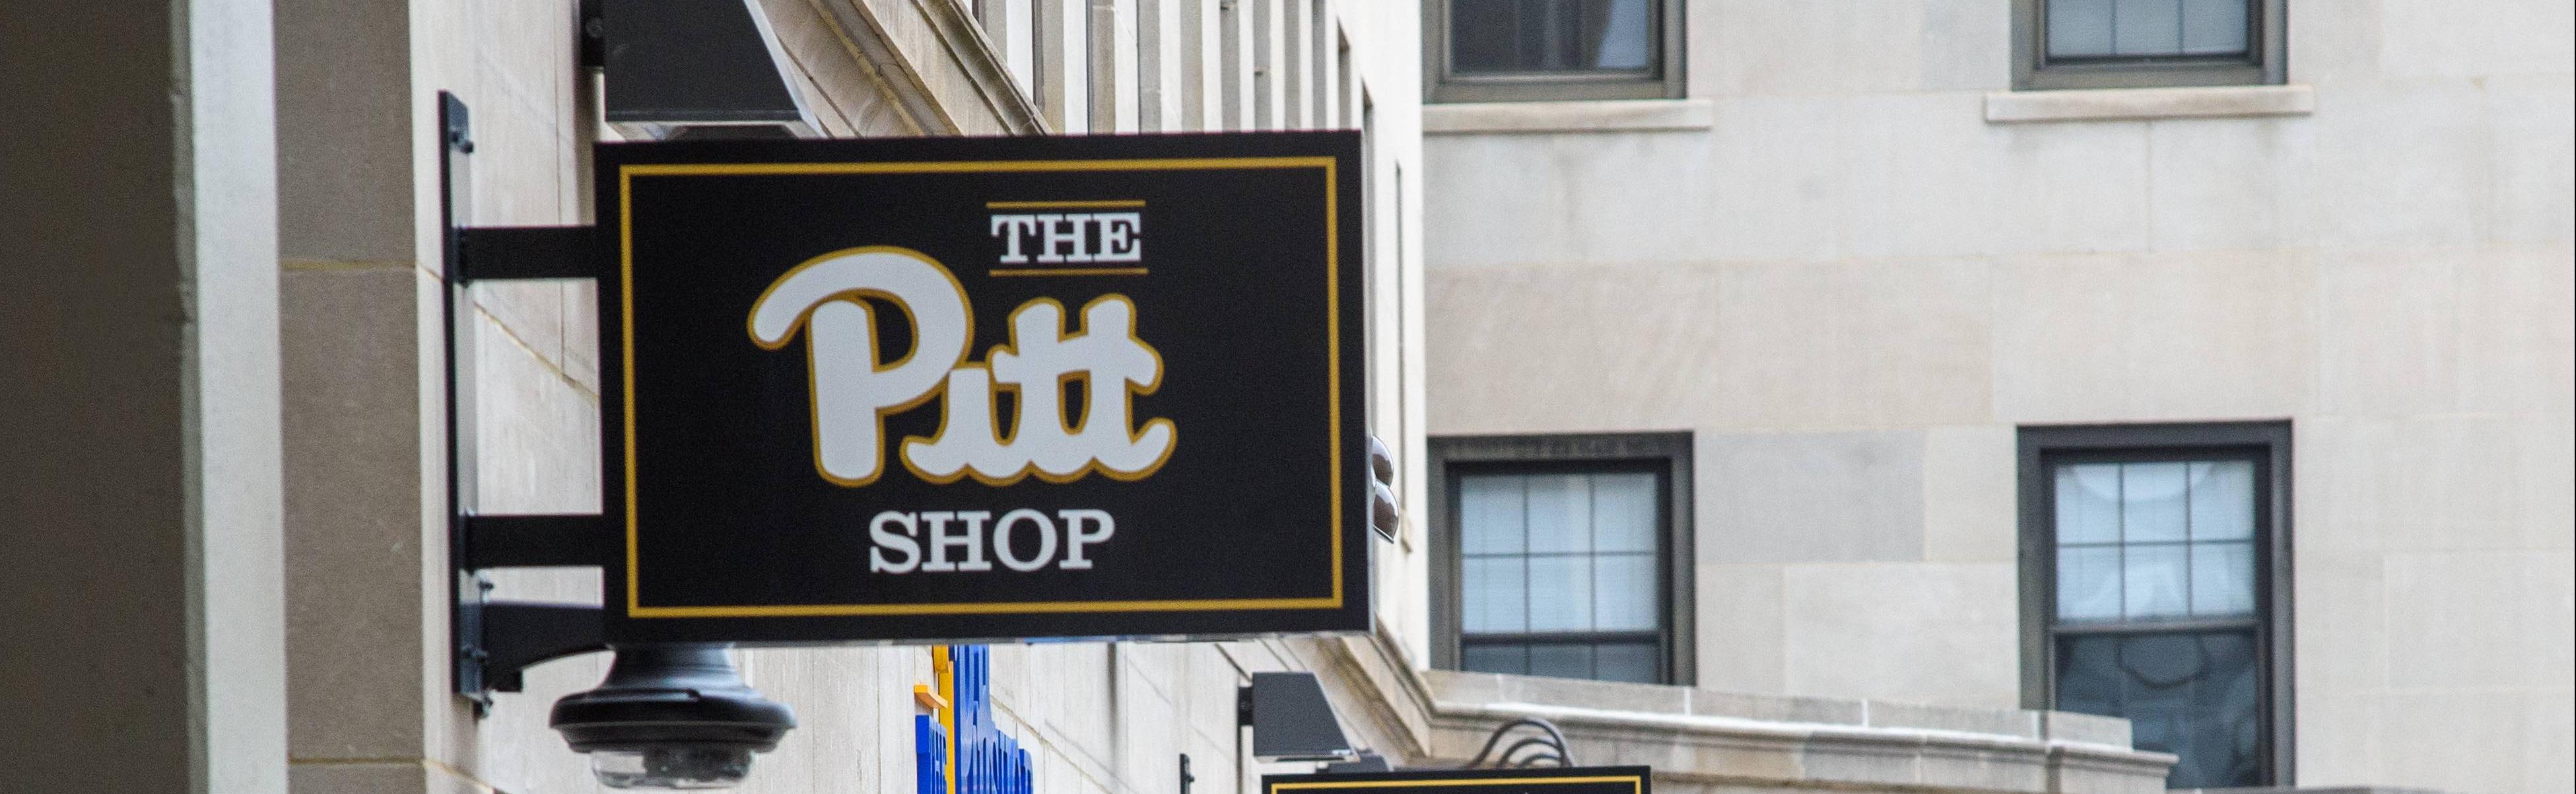 The Pitt Shop